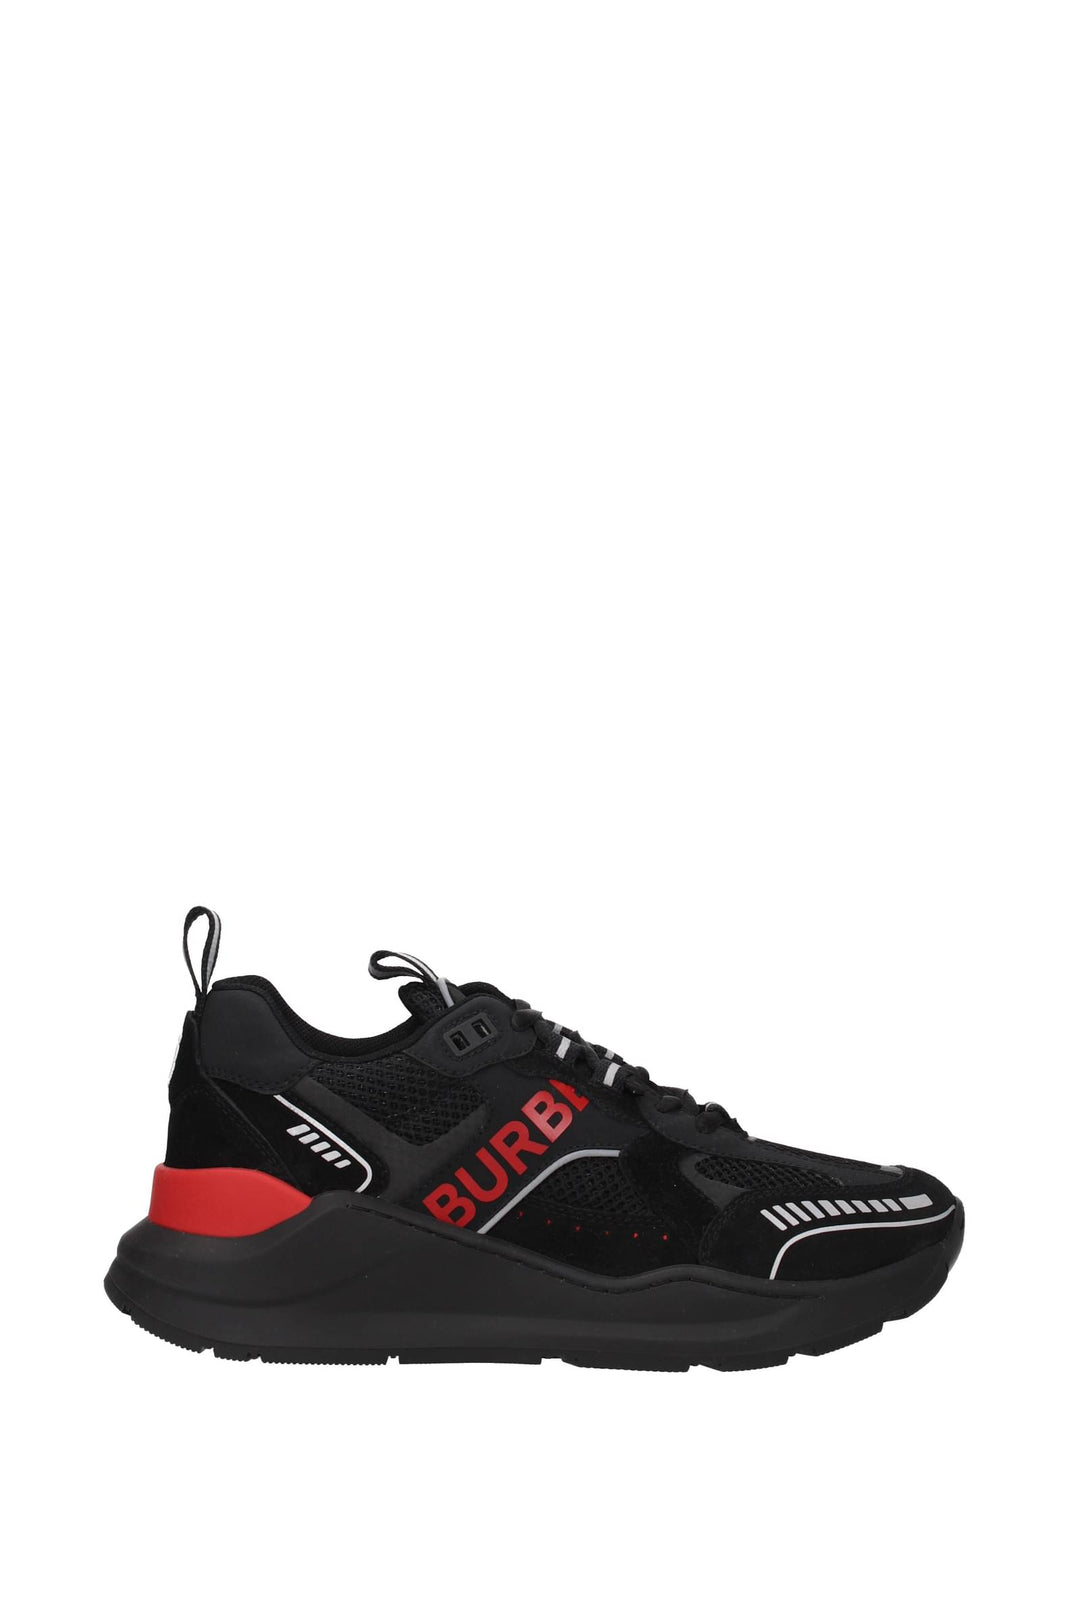 Sneakers Camoscio Nero Rosso - Burberry - Uomo